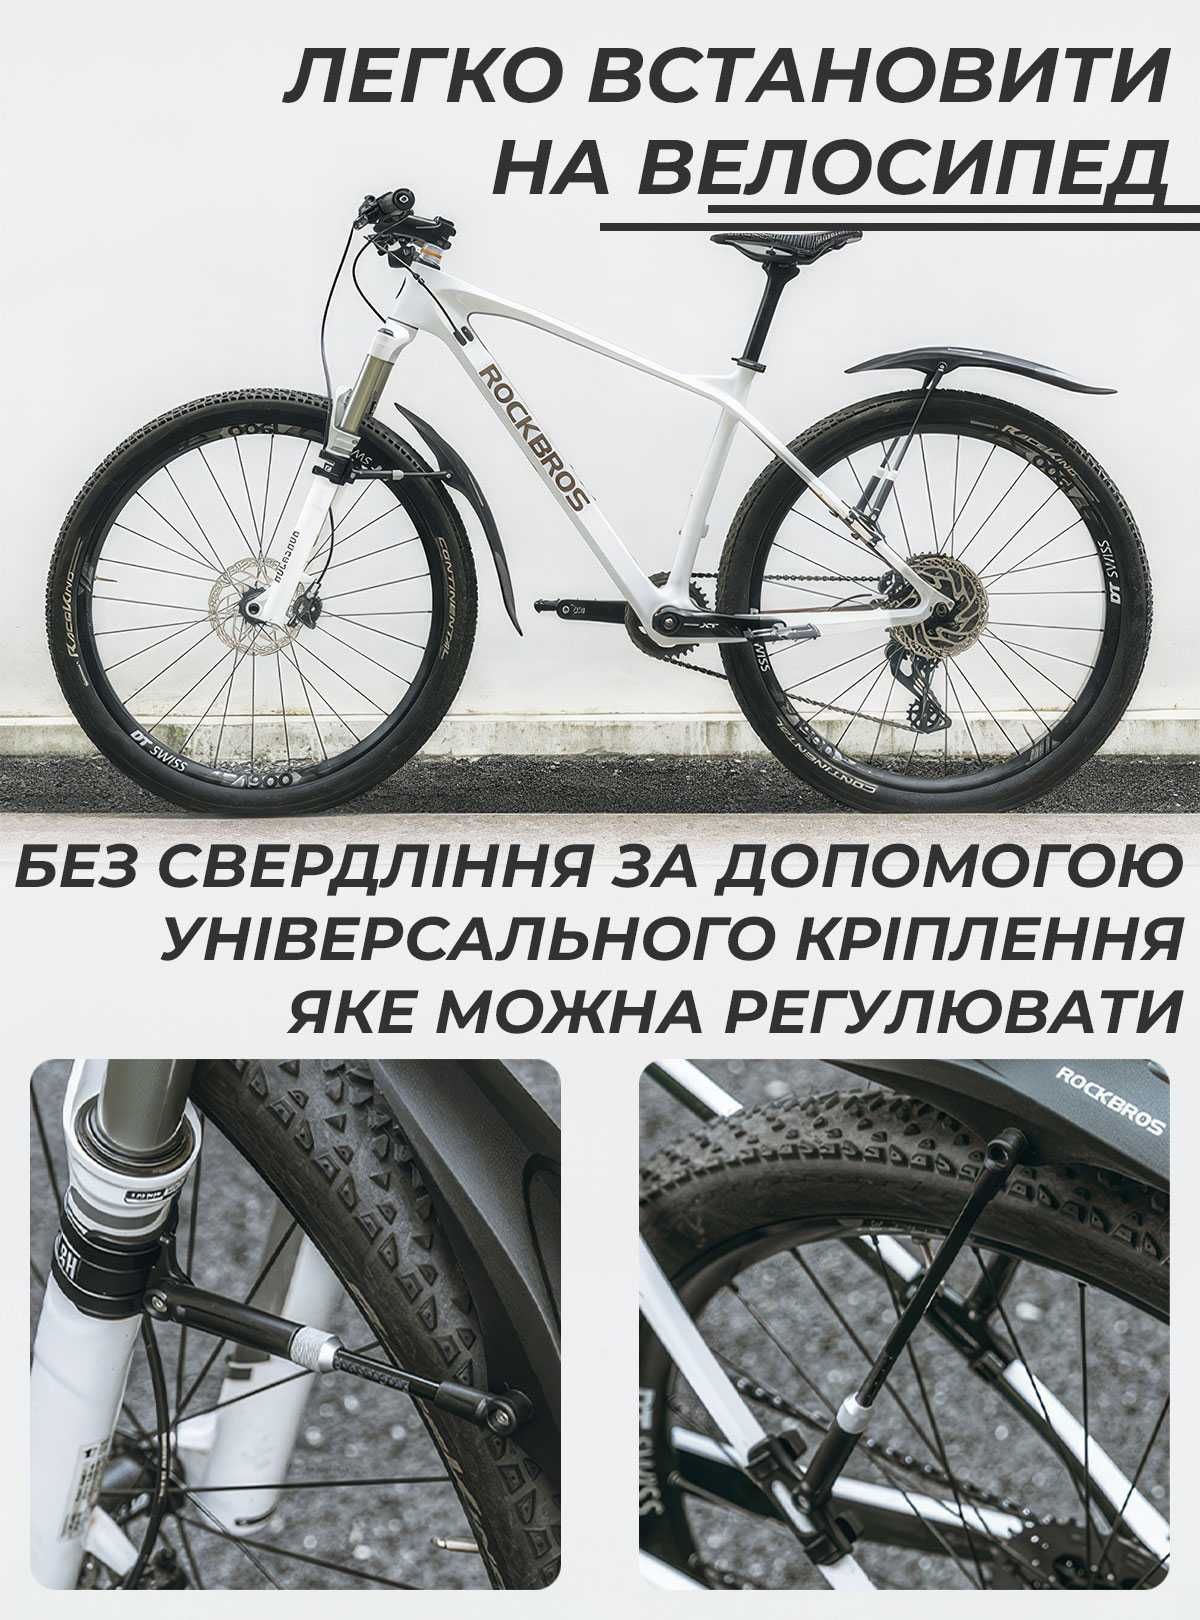 Комплект крылья на велосипед / защитные щитки болотники для велосипеда